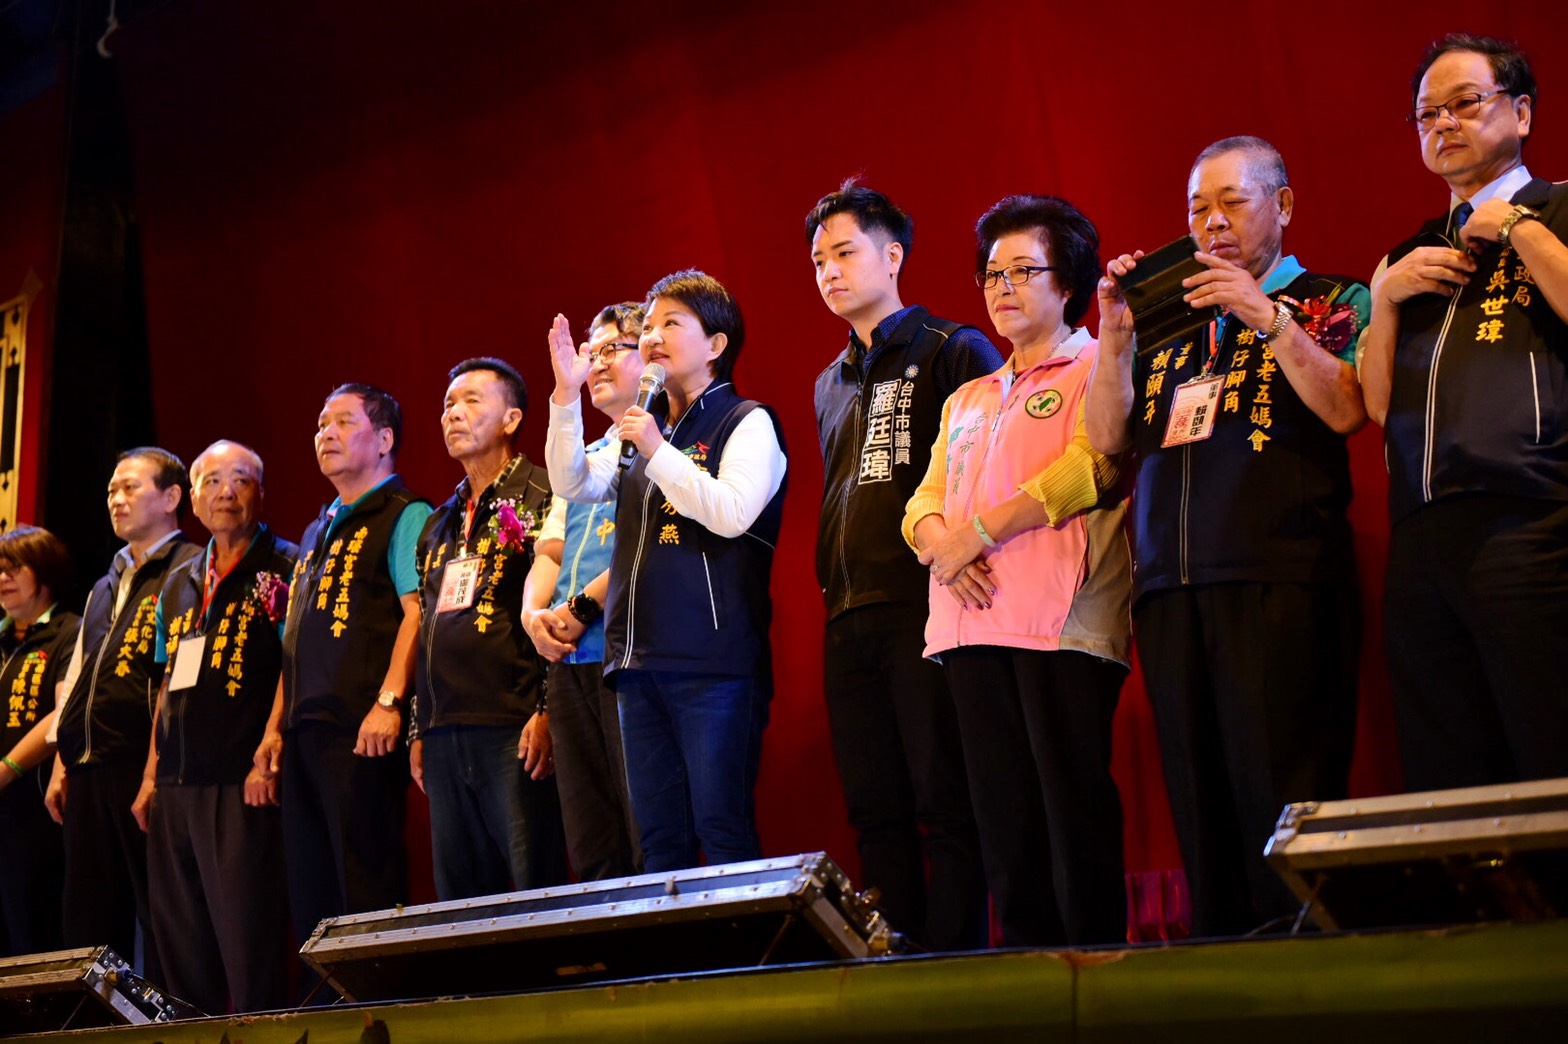 明華園戲劇總團經典劇《流星》 10月24日南區盛大開演